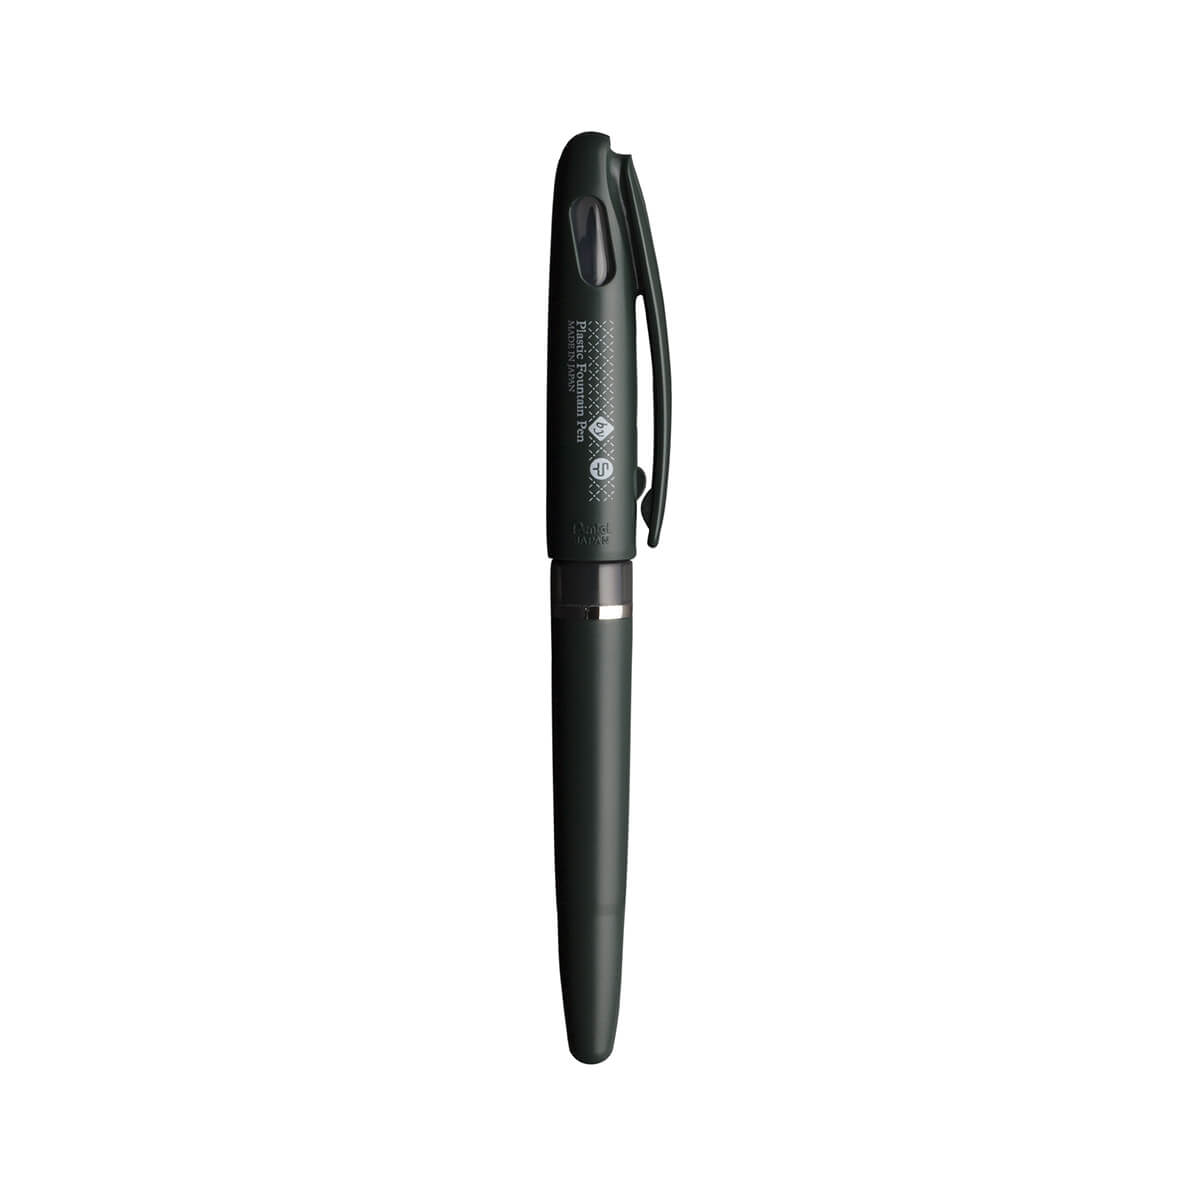 完成品配送 クラフトデザインテクノロジー　CDT 鉛筆　ぺんてる 筆記具